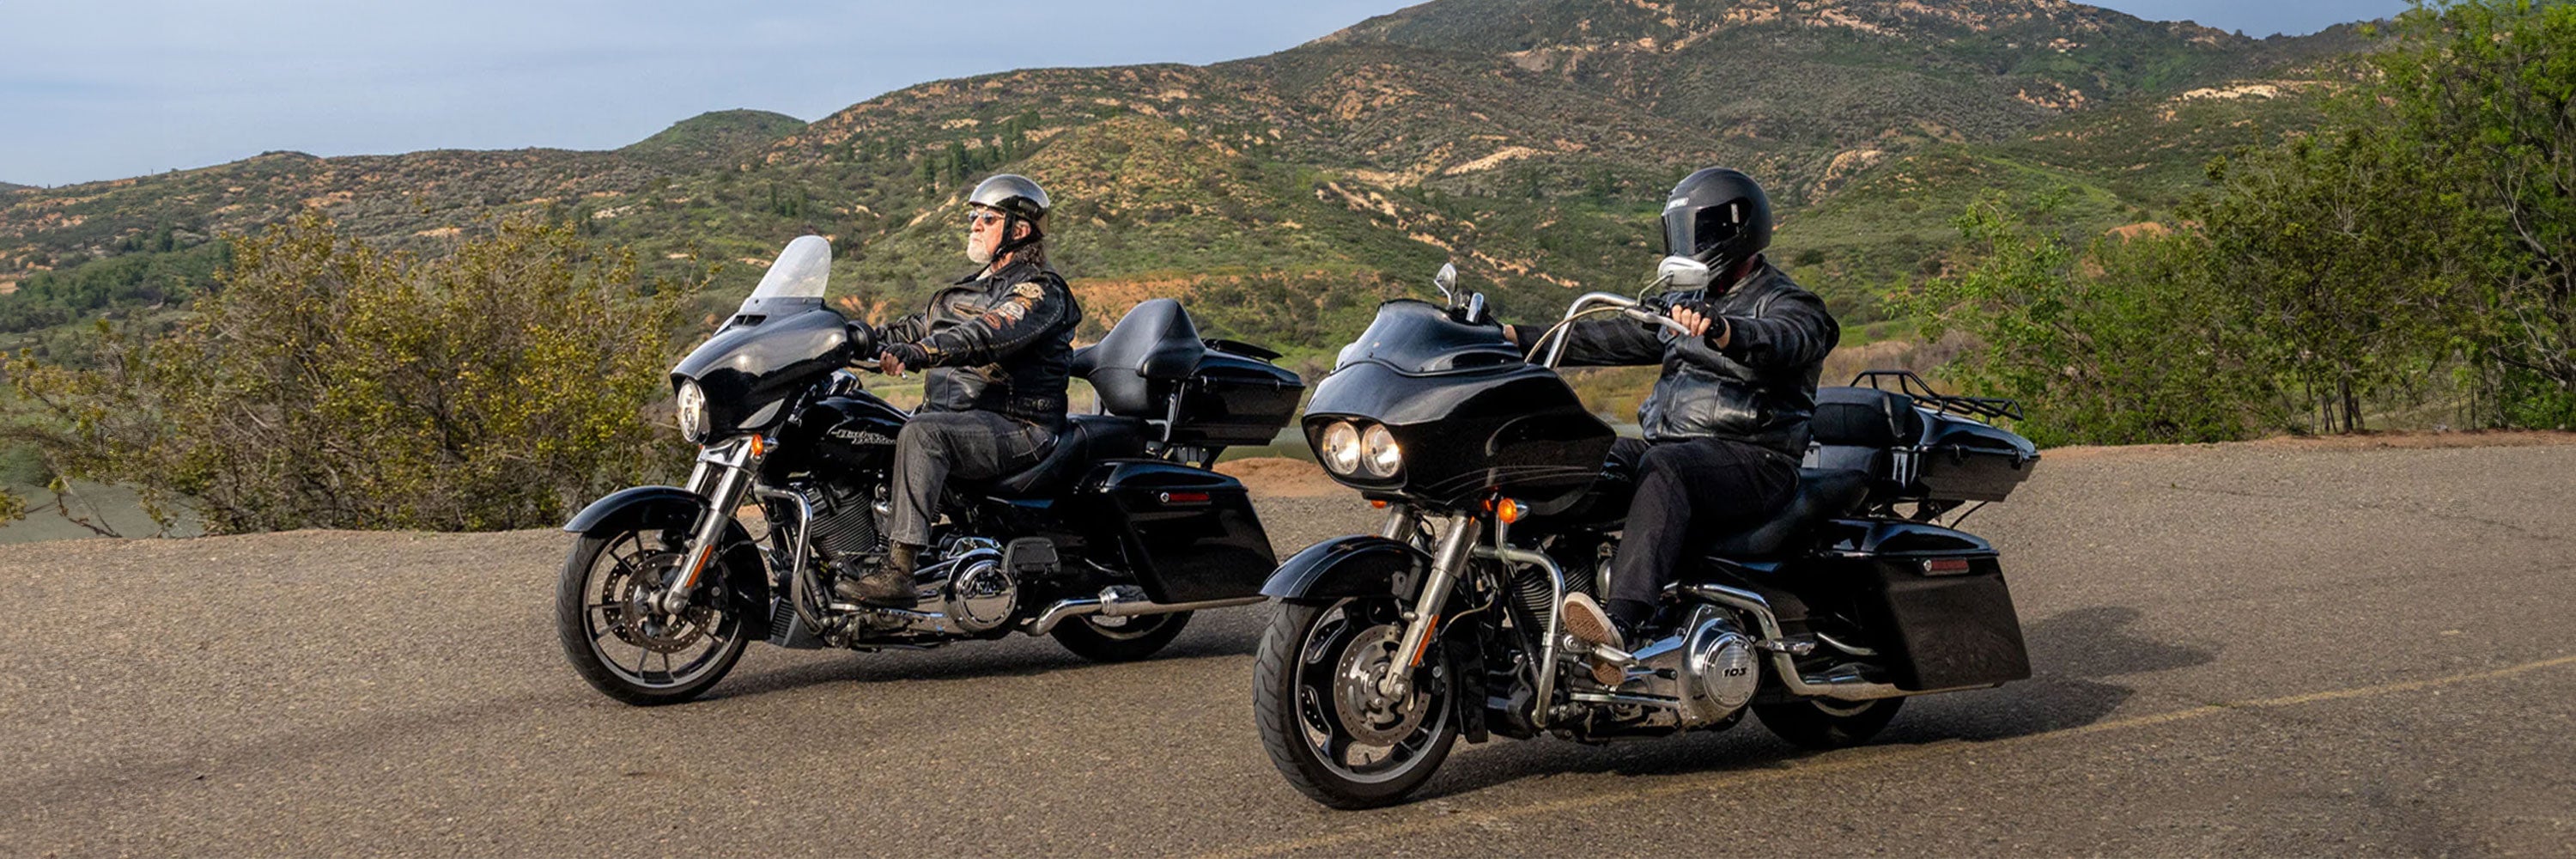 Harley Davidson Touring Seats